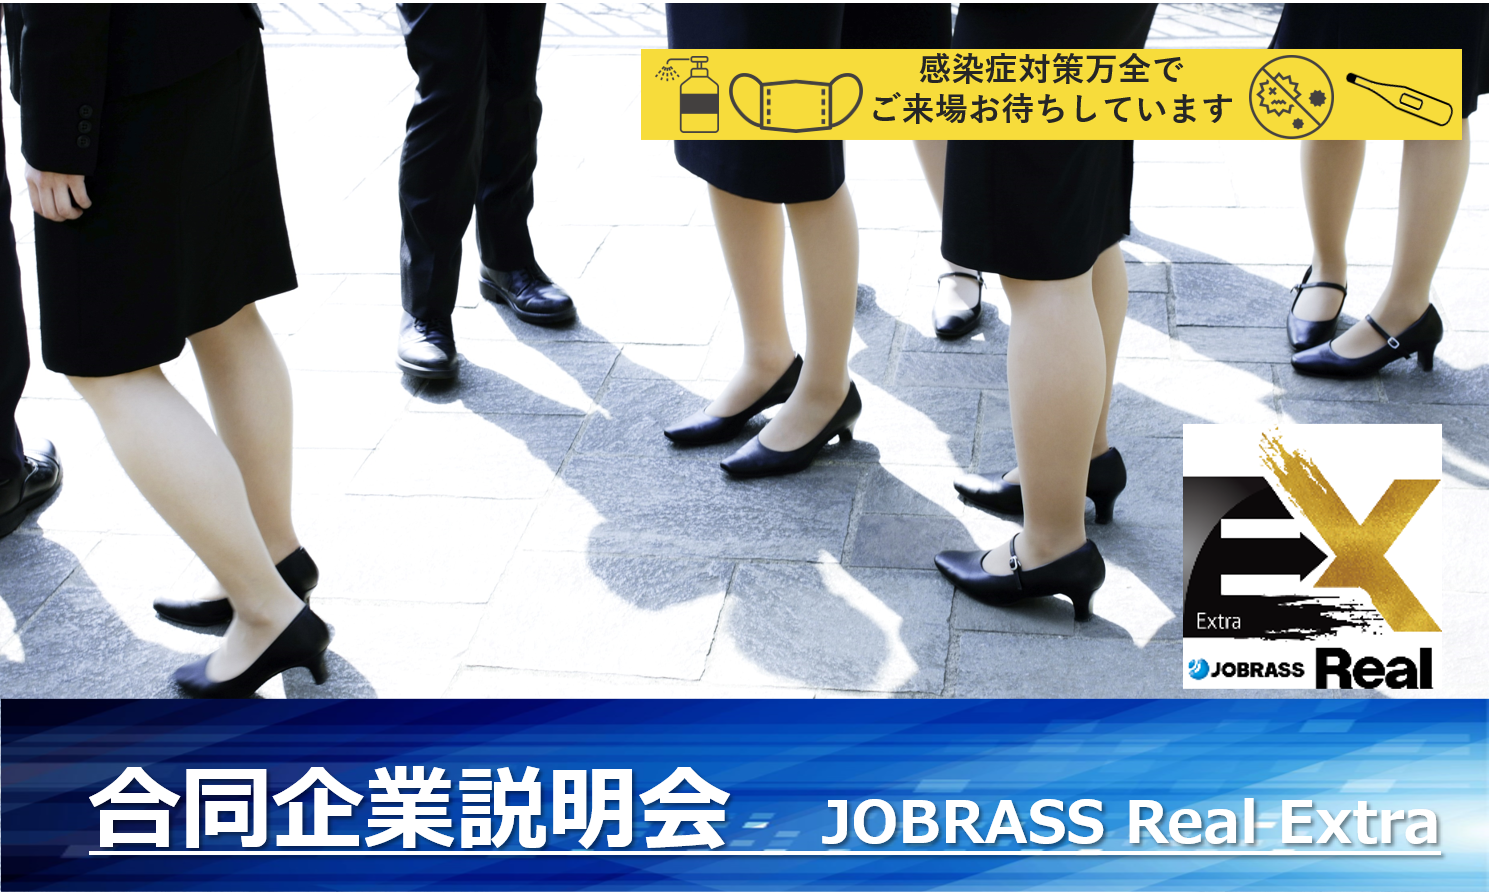 大阪 本町 合同企業説明会 Jobrass Real Extra コロナ対策として会員限定開催 Jobrass新卒 ジョブラス